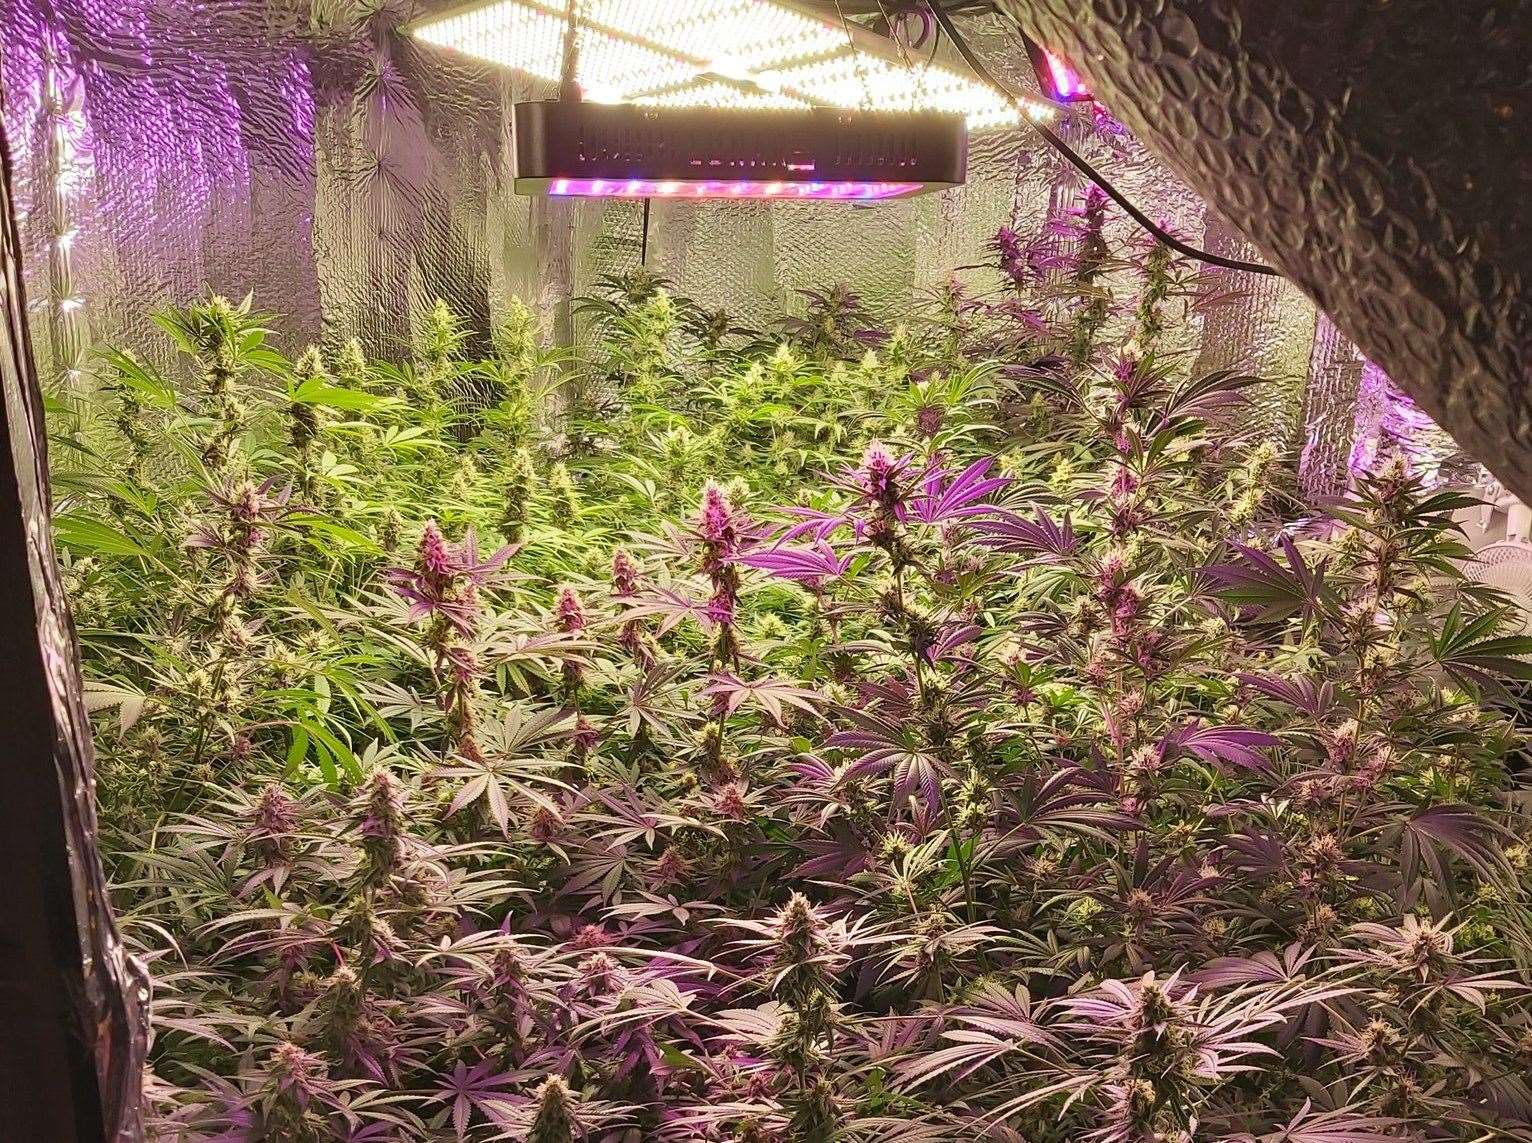 The cannabis farm find